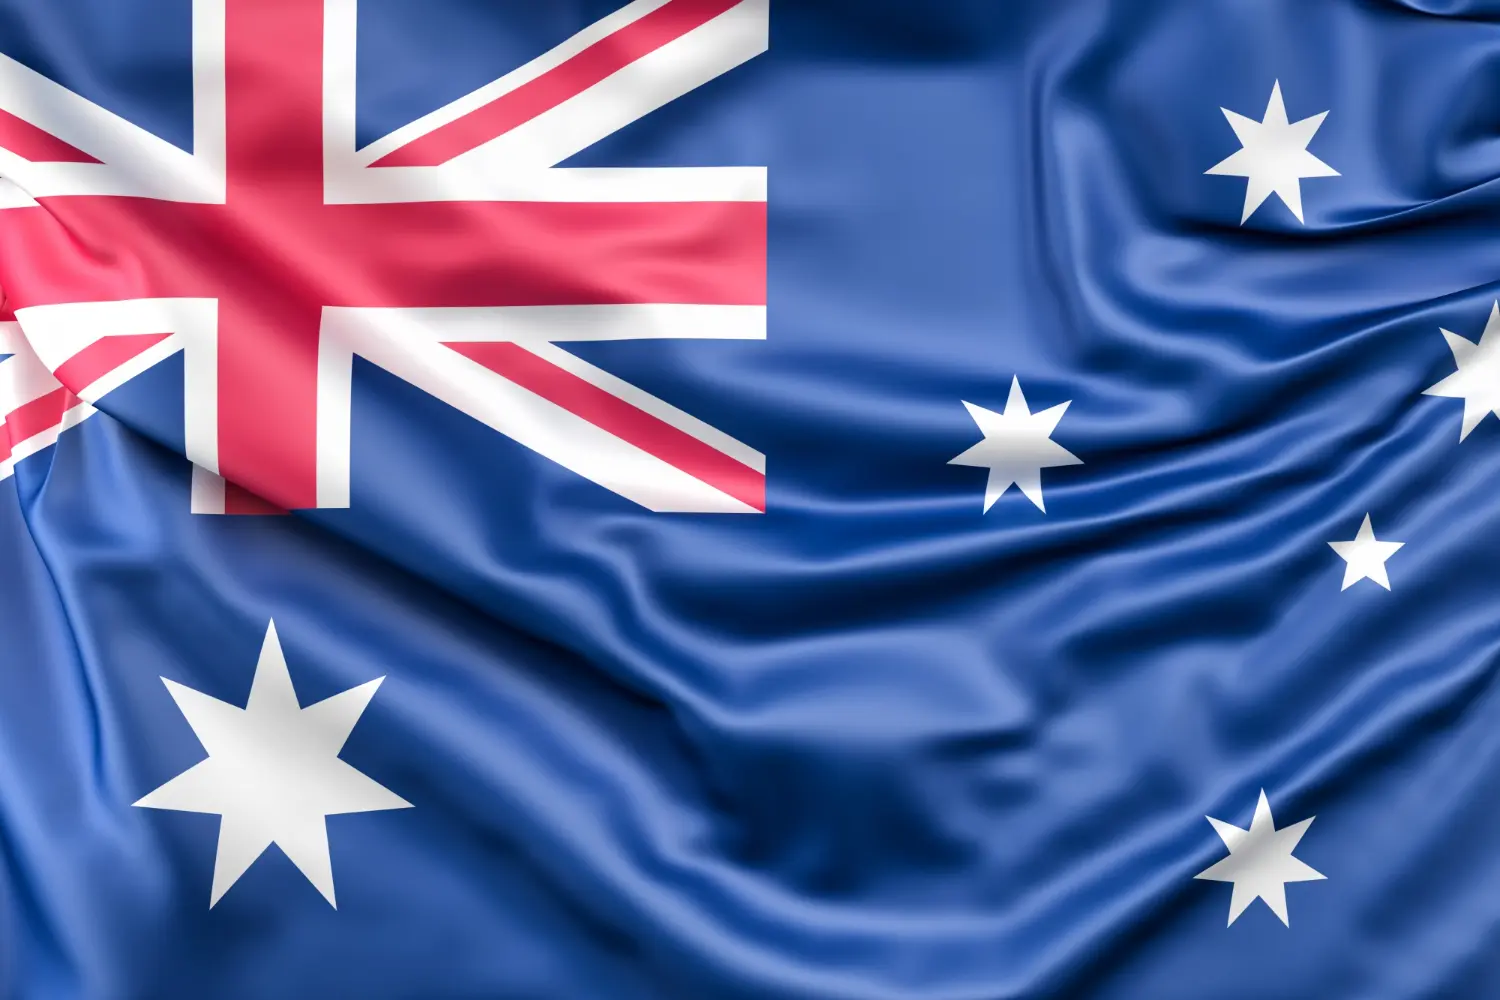 Bandeira da austrália, representando o visto australiano